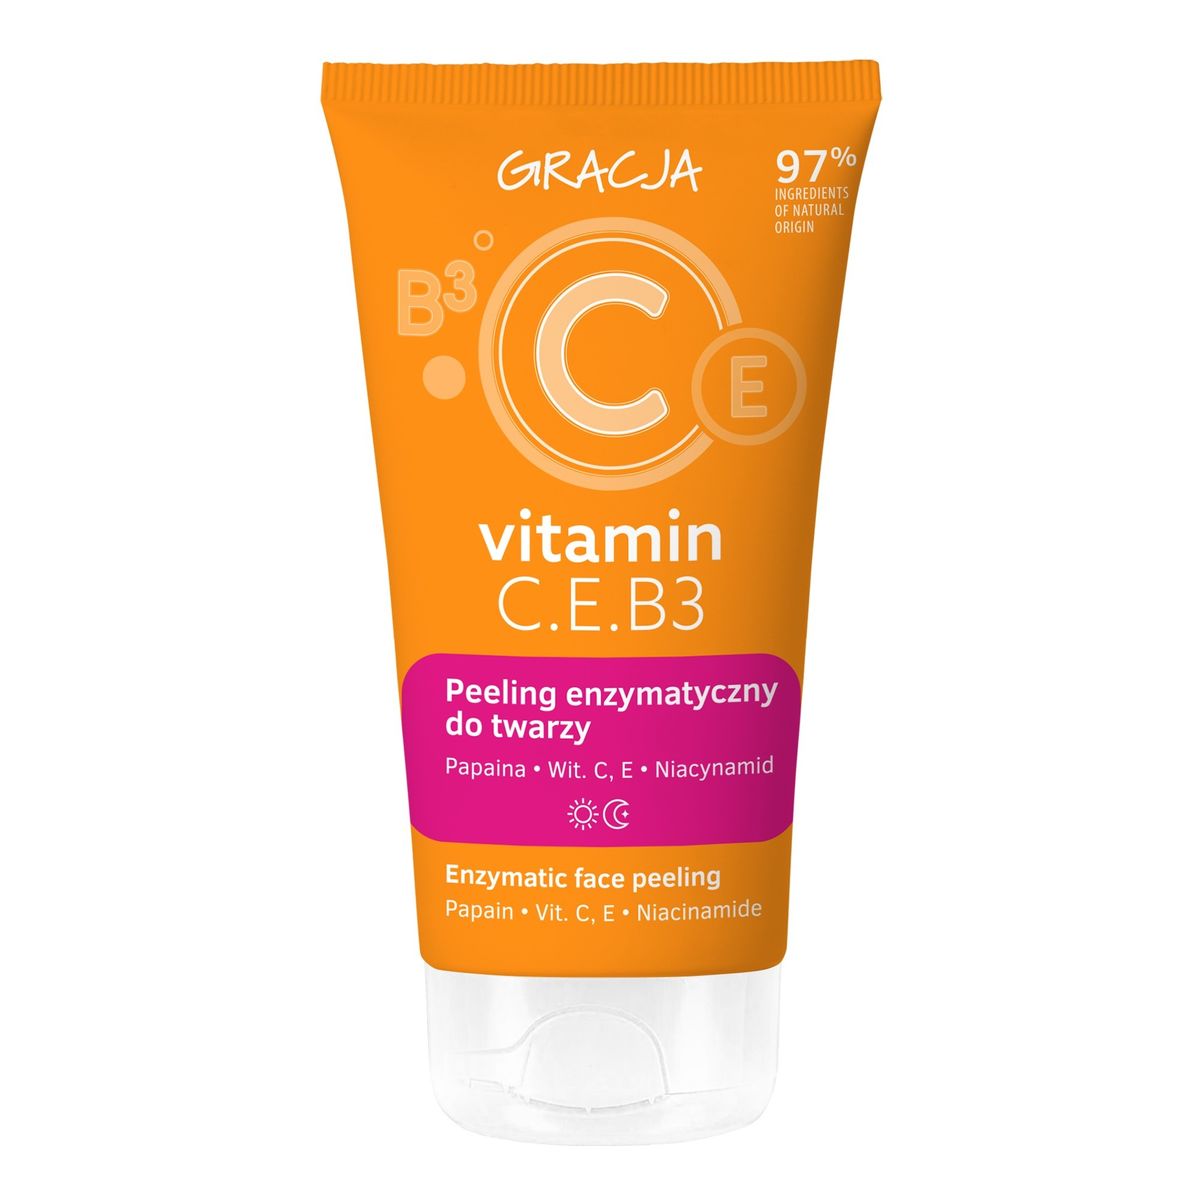 Miraculum Gracja vitamin c.e.b3 peeling enzymatyczny do twarzy 75 ml 75ml